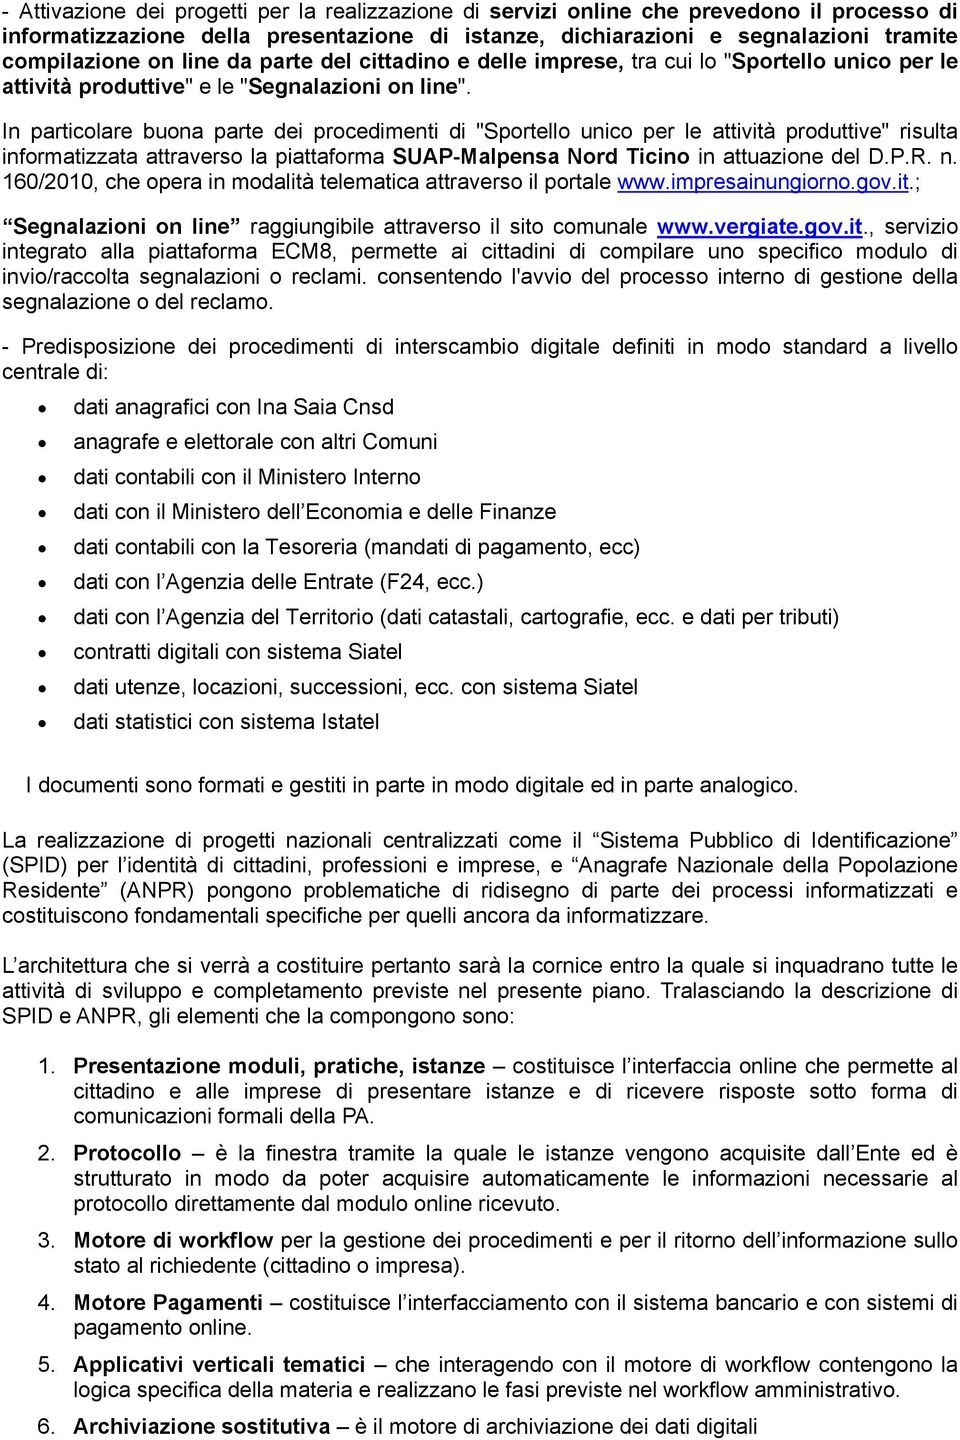 In particolare buona parte dei procedimenti di "Sportello unico per le attività produttive" risulta informatizzata attraverso la piattaforma SUAP-Malpensa Nord Ticino in attuazione del D.P.R. n.